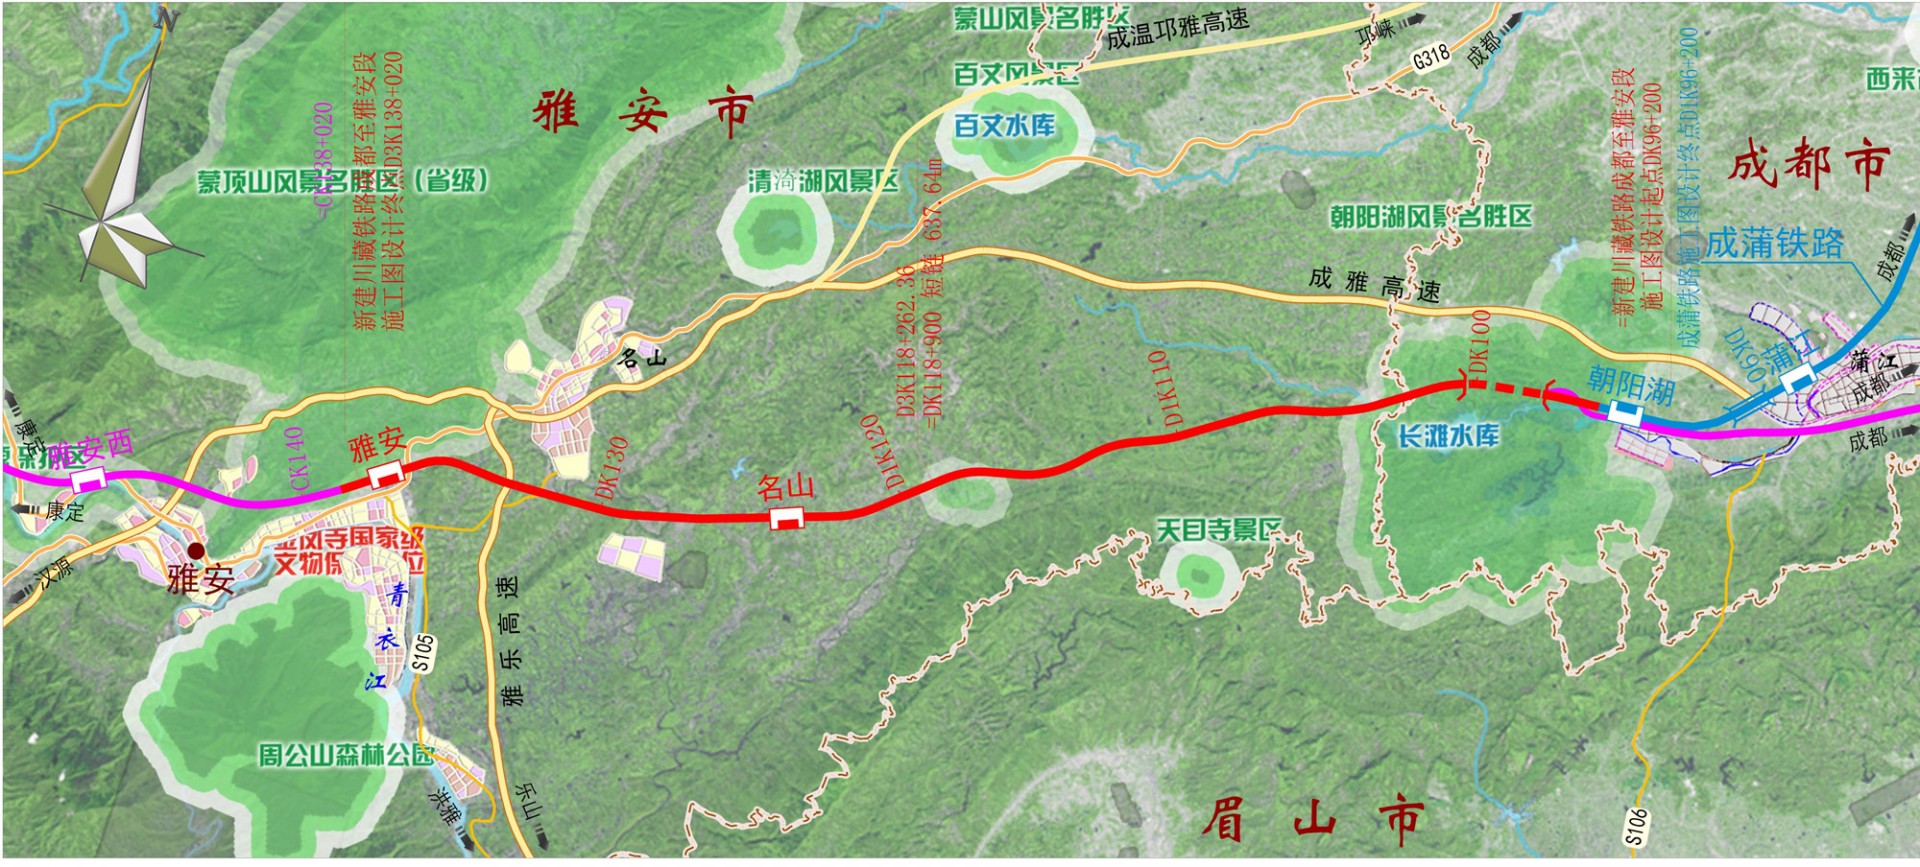 川藏铁路成雅段目前已经完工过半明年通车不是梦